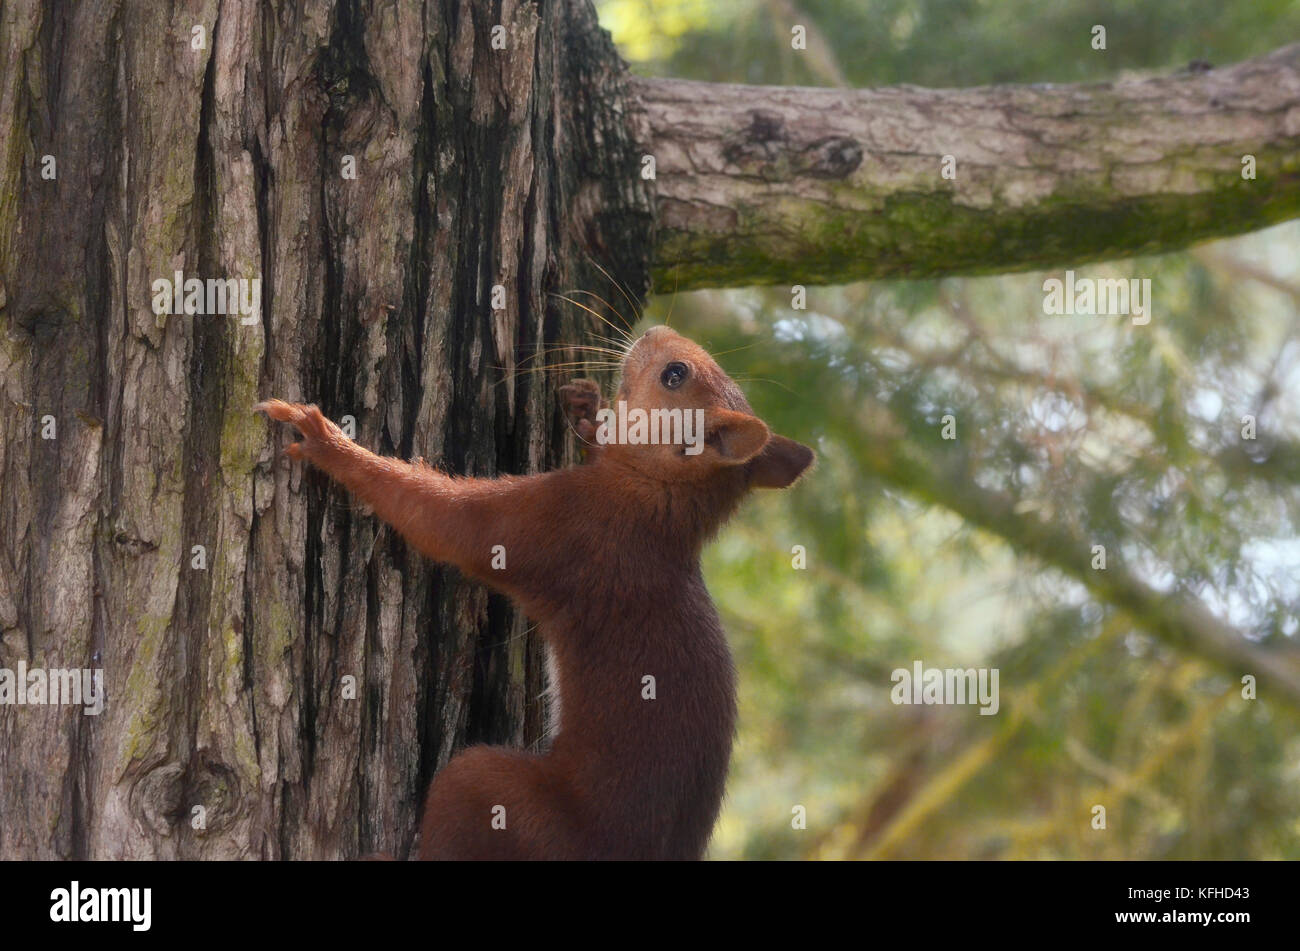 Écureuil rouge qui va vers le haut par le tronc d'un pin. Faune à l'intérieur de la forêt méditerranéenne, en Espagne. Lumière limitée en raison de l'ombre des feuilles. S Banque D'Images